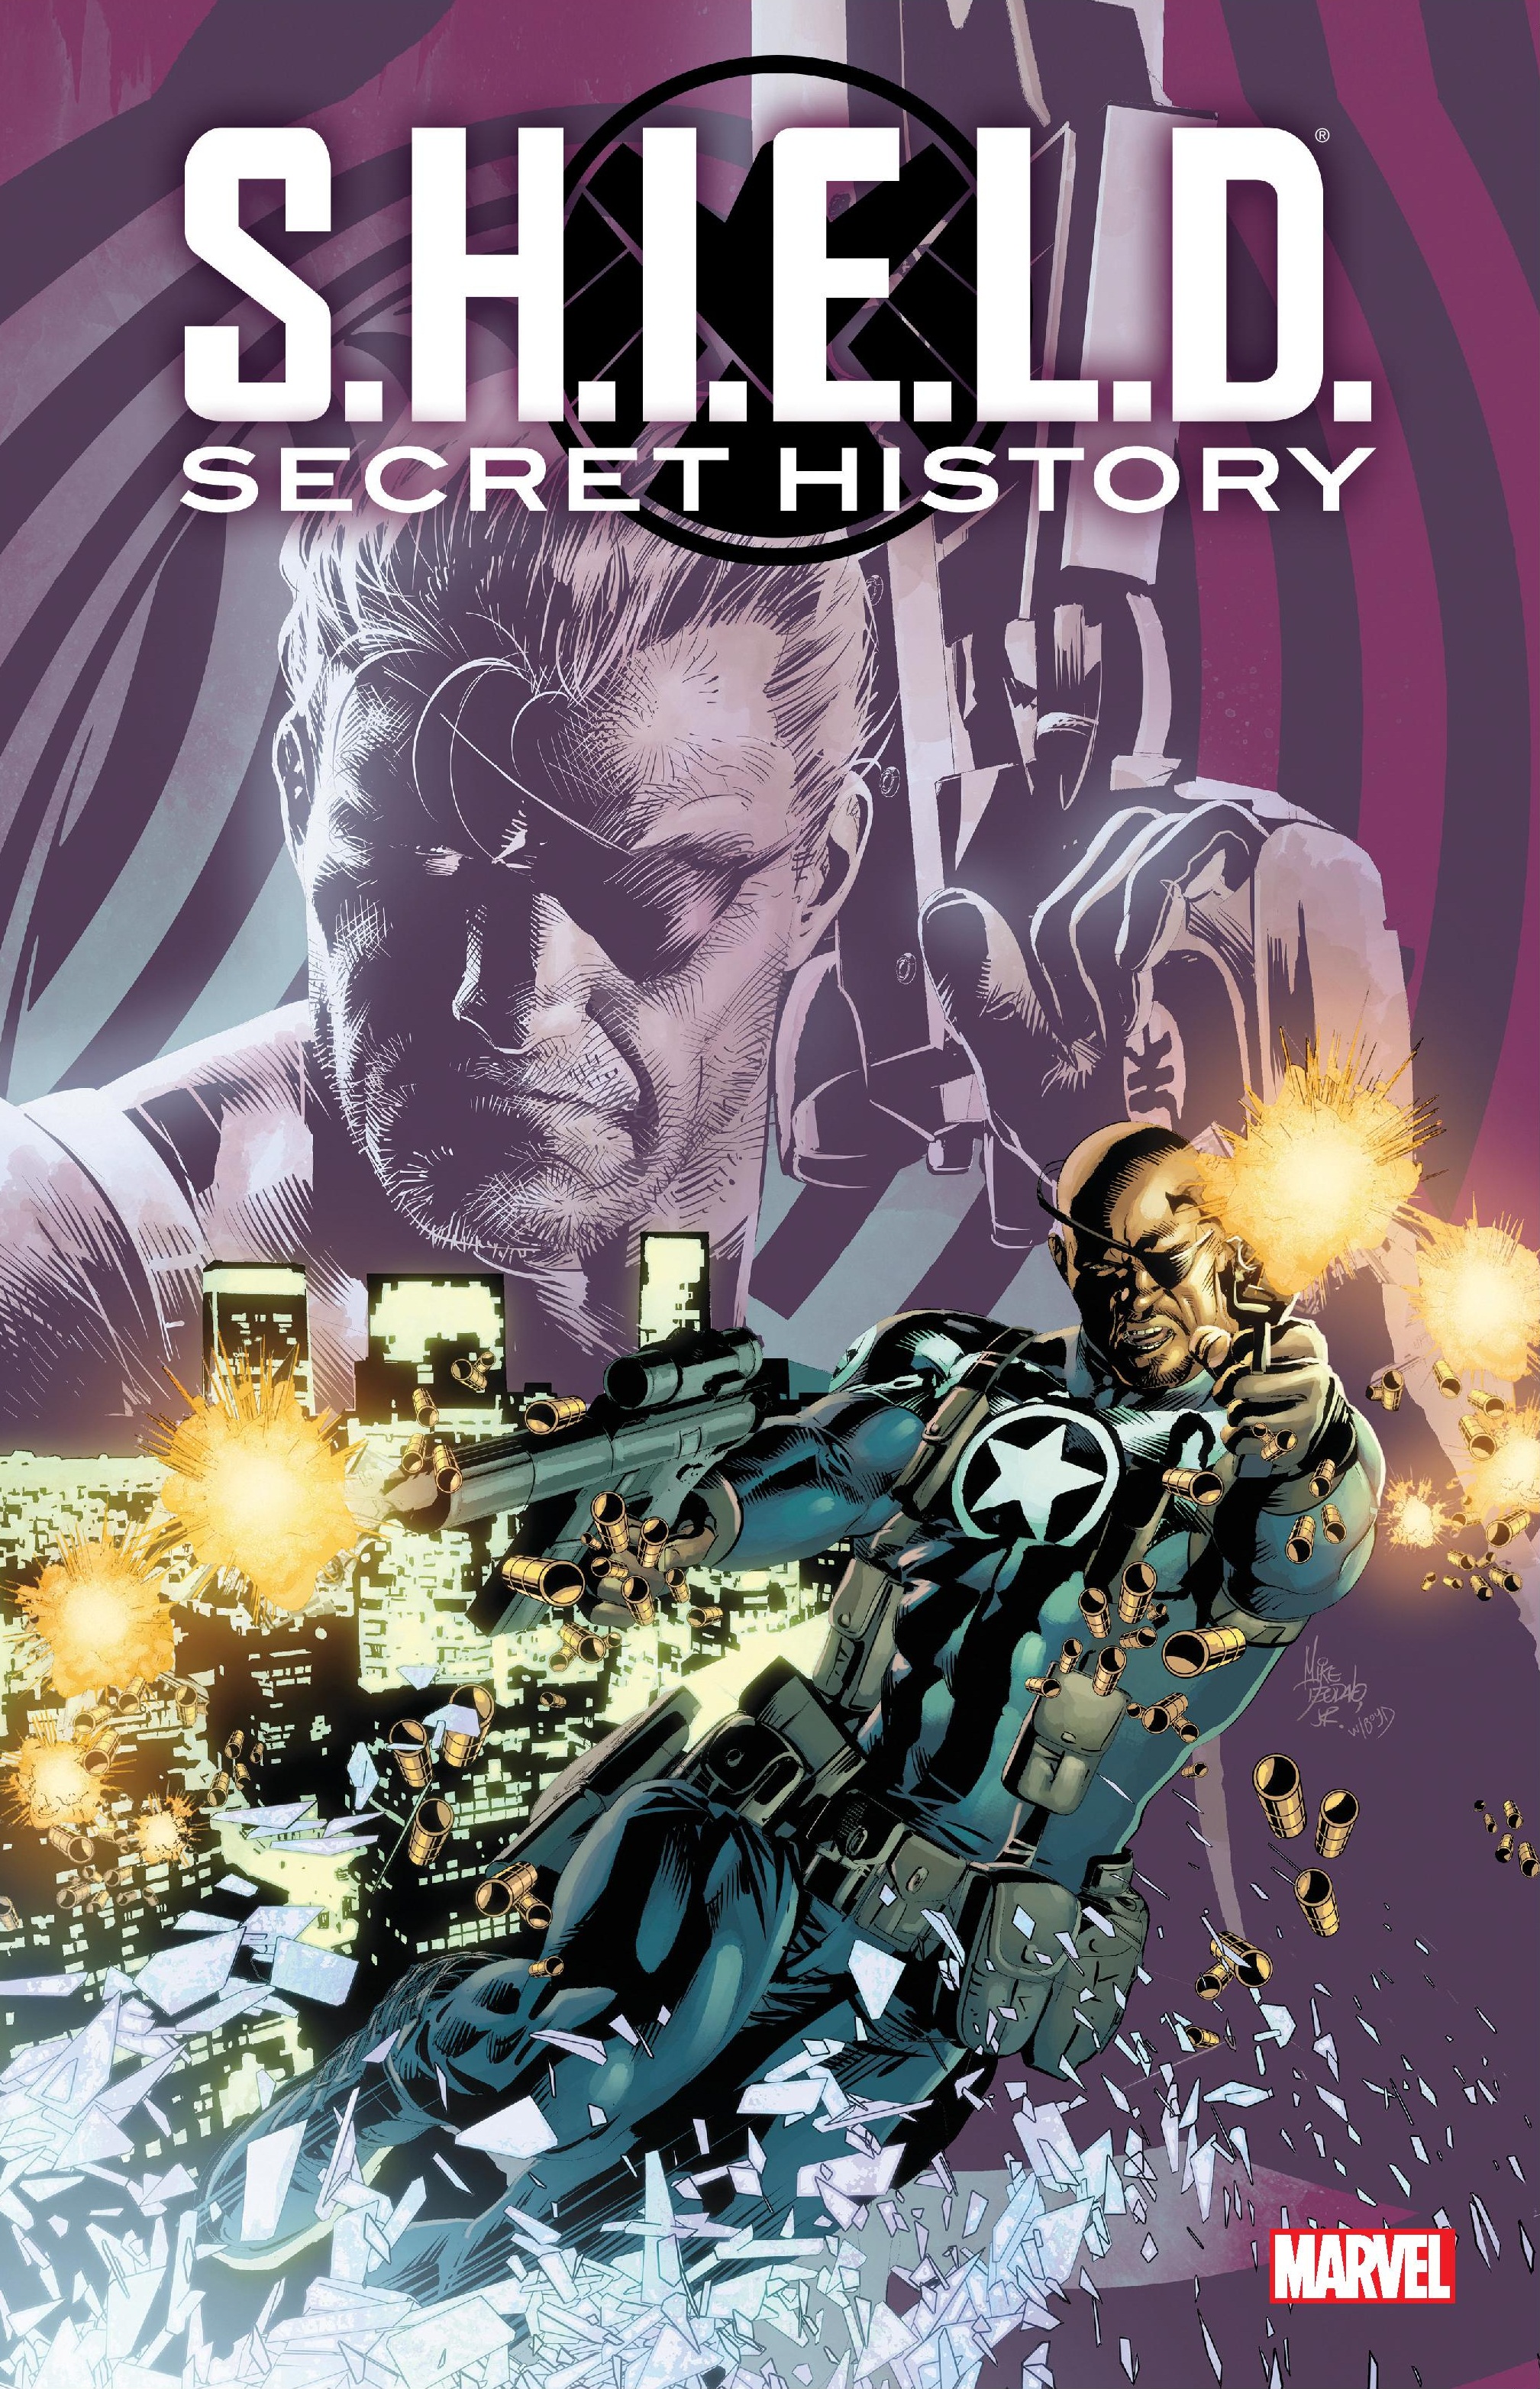 S.H.I.E.L.D.: SECRET HISTORY TPB (Trade Paperback)